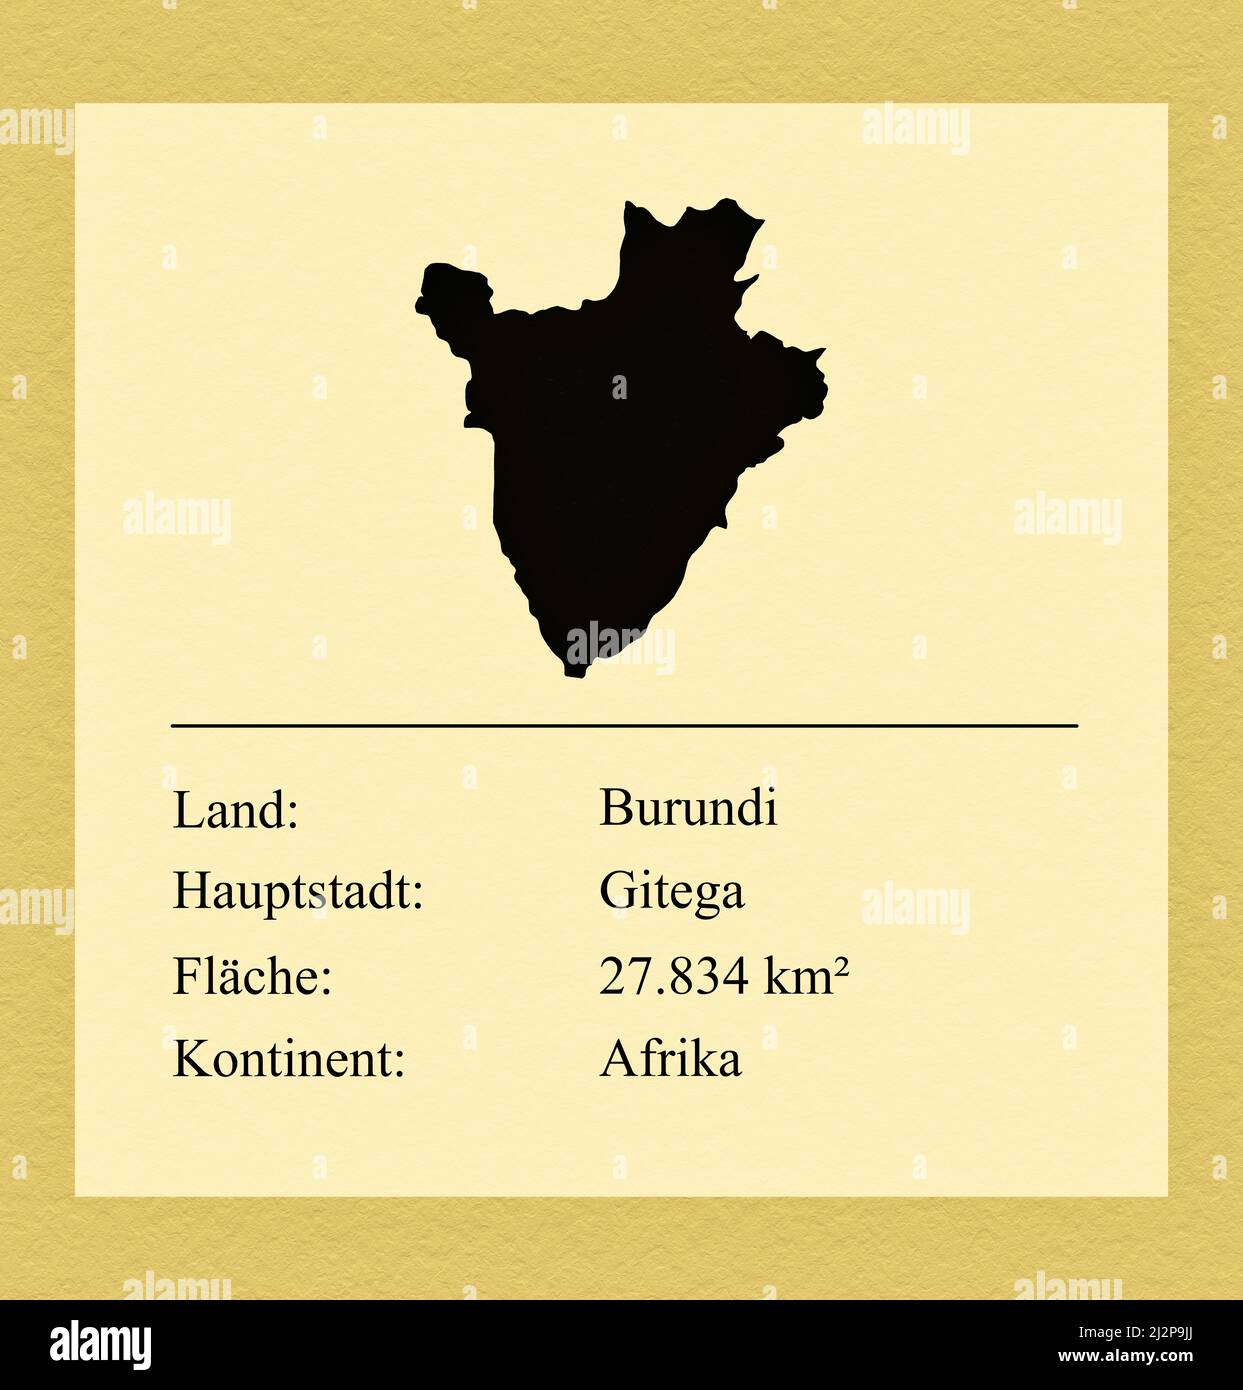 Umrisse des Landes Burundi, darunter ein kleiner Steckbrief mit Ländernamen, Hauptstadt, Fläche und Kontinent Foto Stock